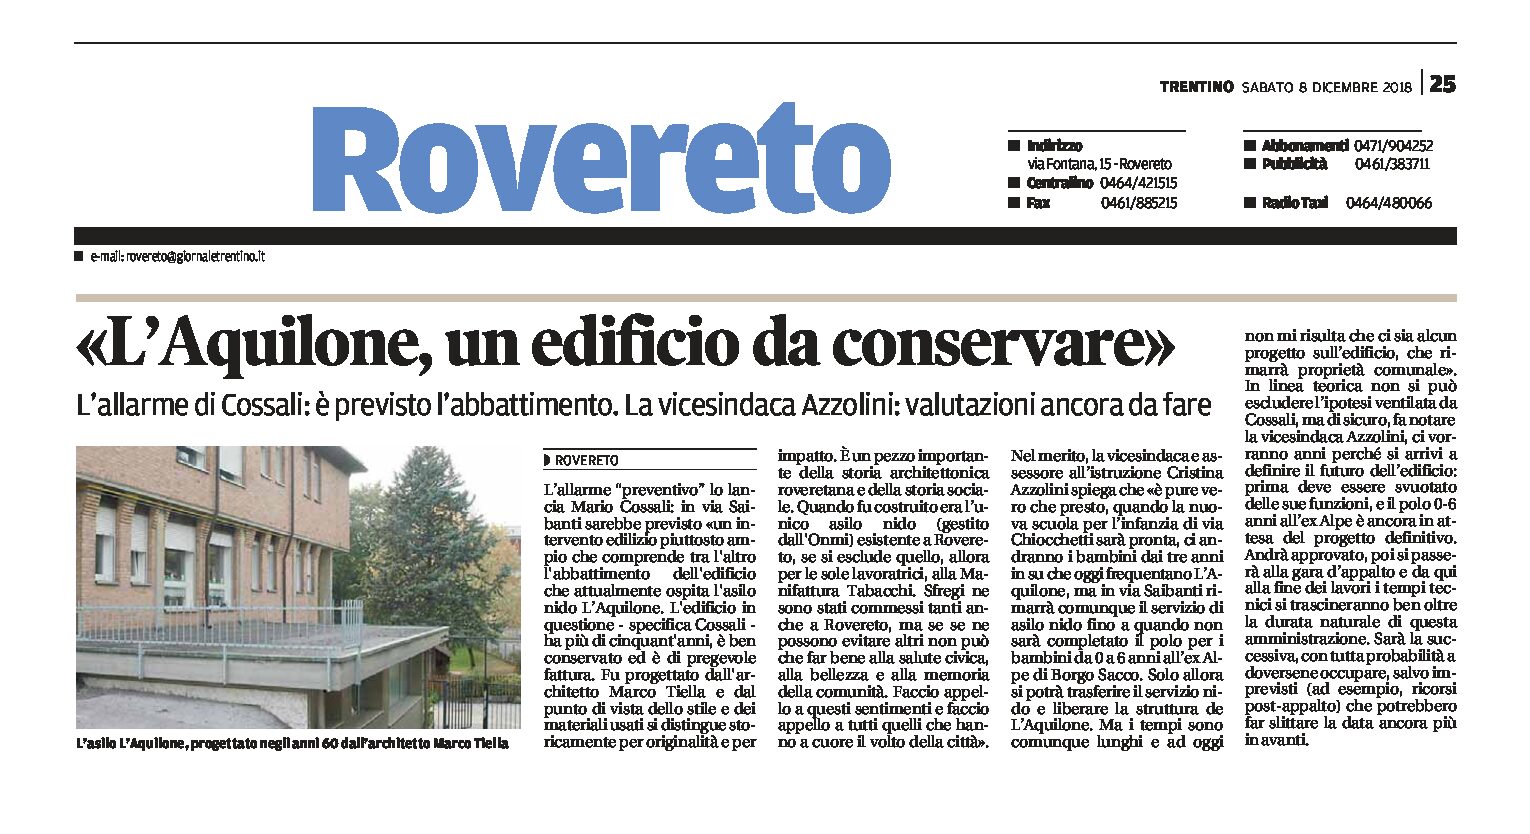 Rovereto, l’Aquilone: allarme di Cossali “un edificio da conservare”